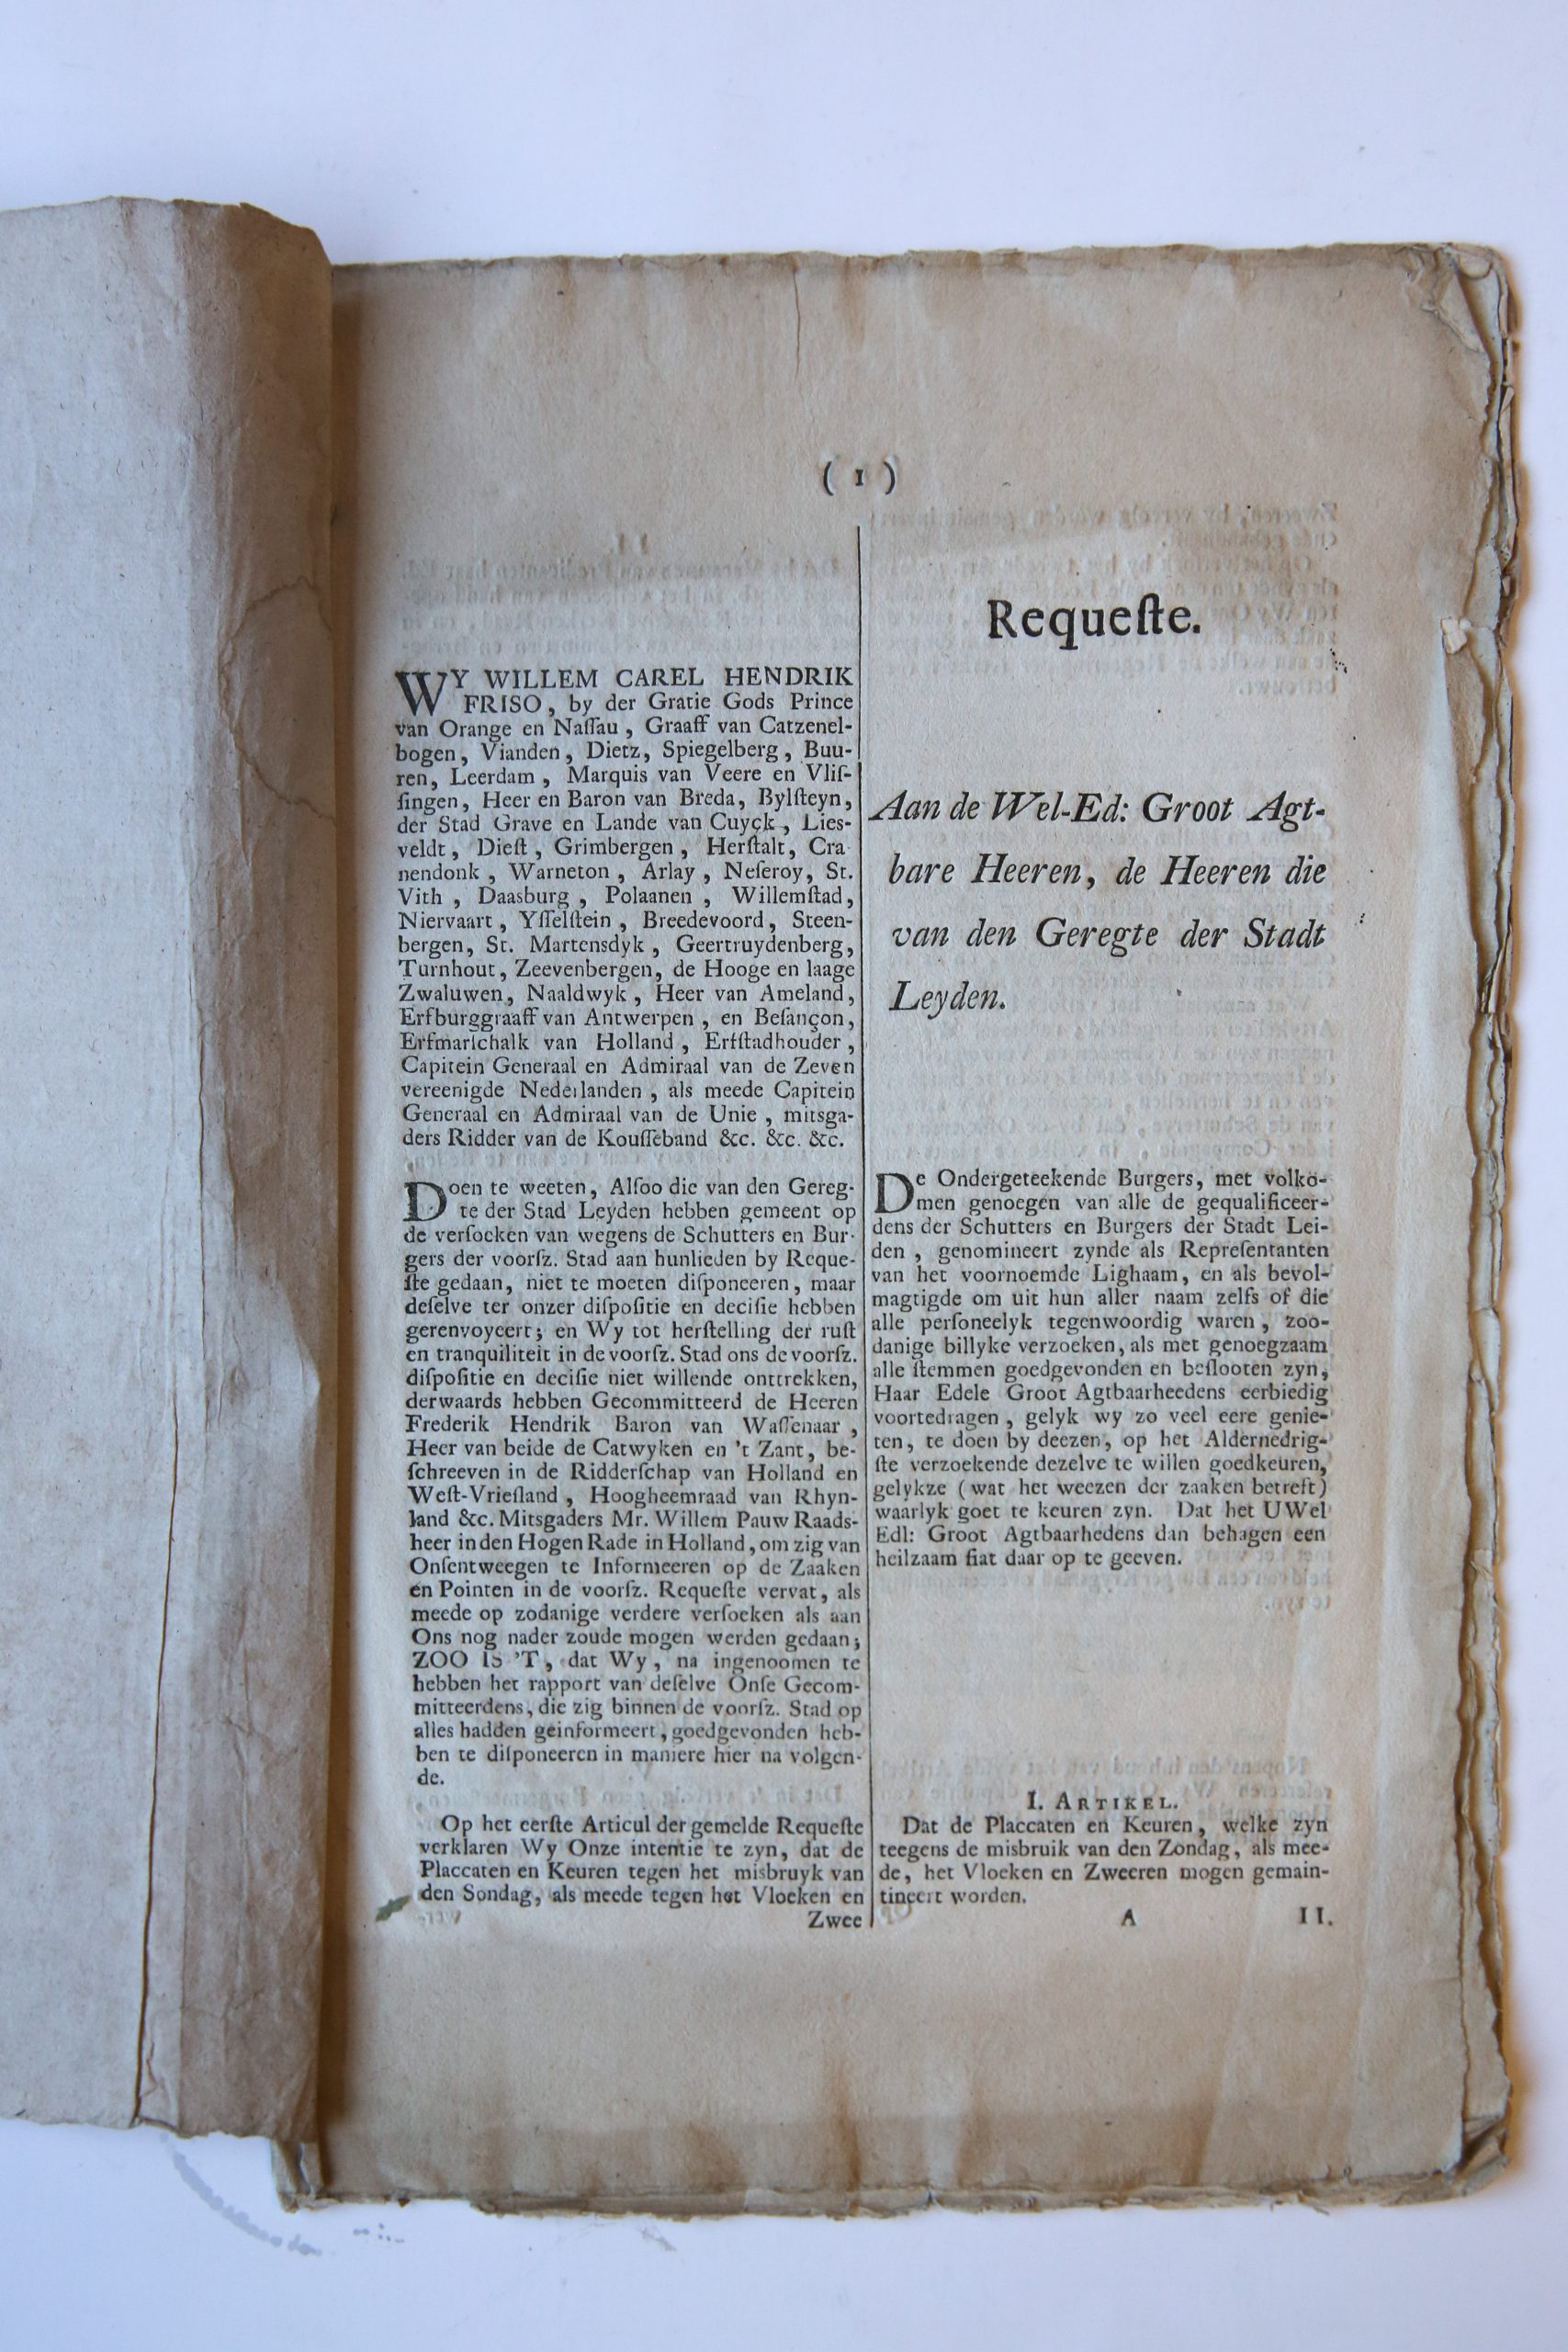  - LEIDEN IN 1748--- Requeste [van Leidse schutters en burgers] aan (...) heeren van den Geregte der Stadt Leyden, d.d. 19-9-1748. Folio, 8 pag., gedrukt (bij Luchtmans te Leiden).